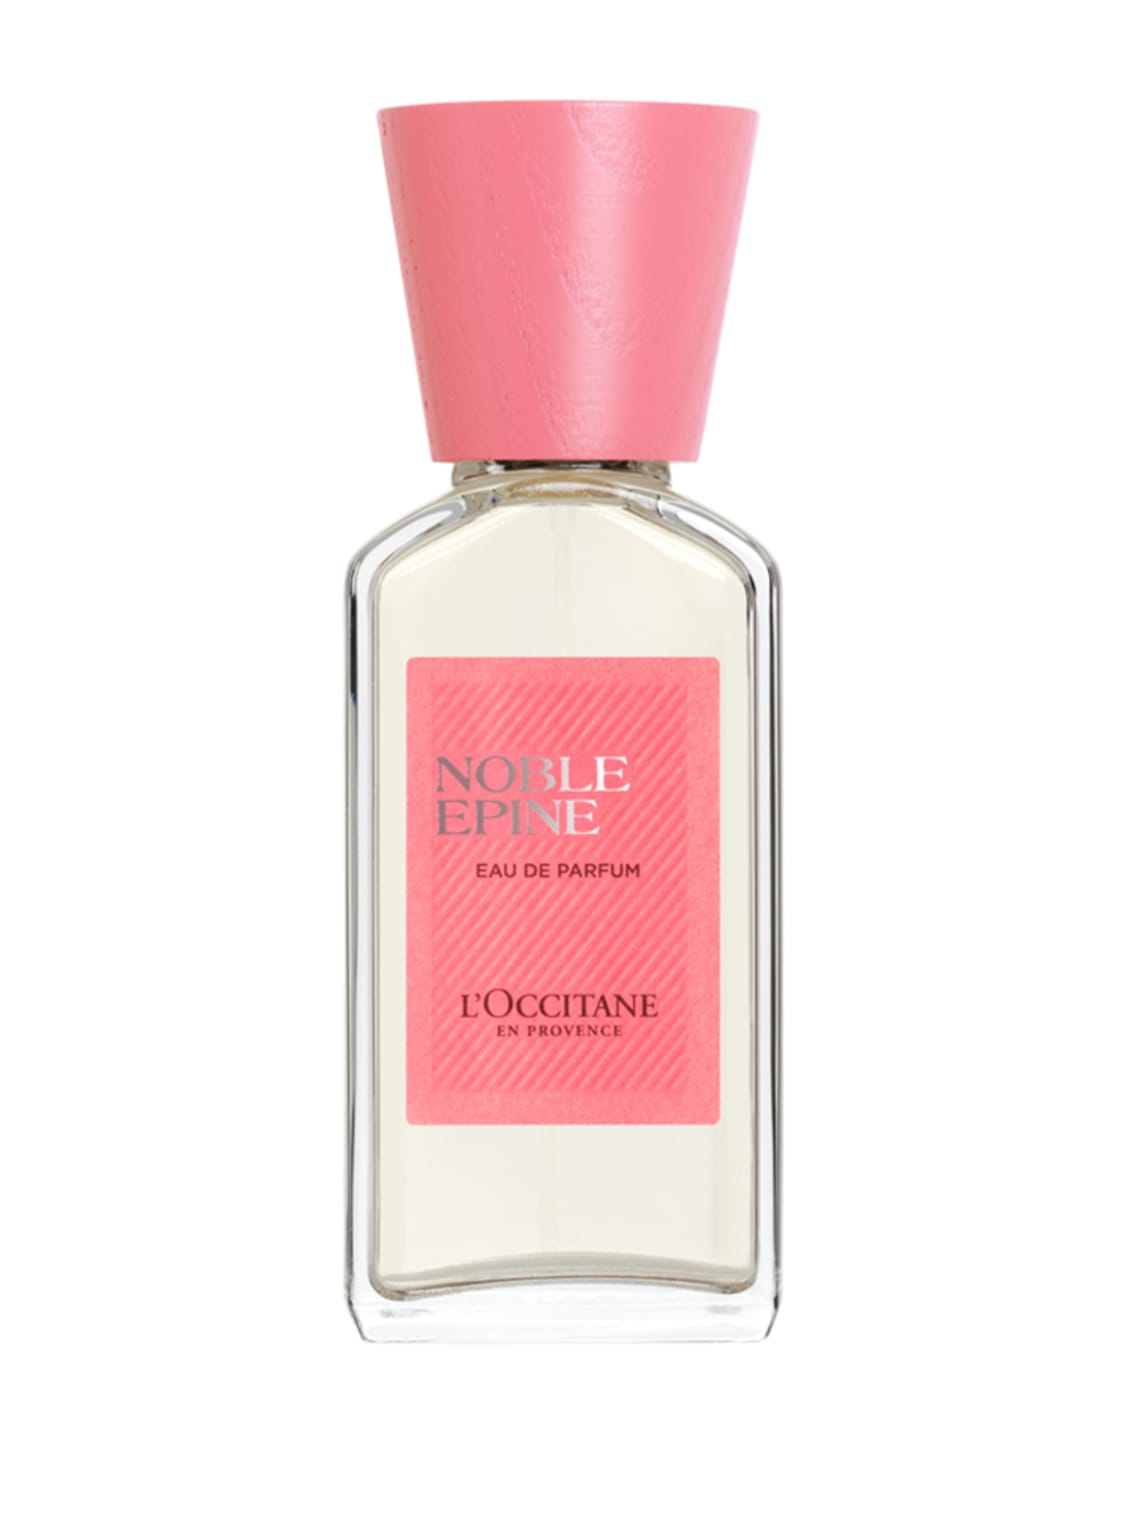 L'occitane Noble Épine Eau de Parfum 50 ml von L'Occitane